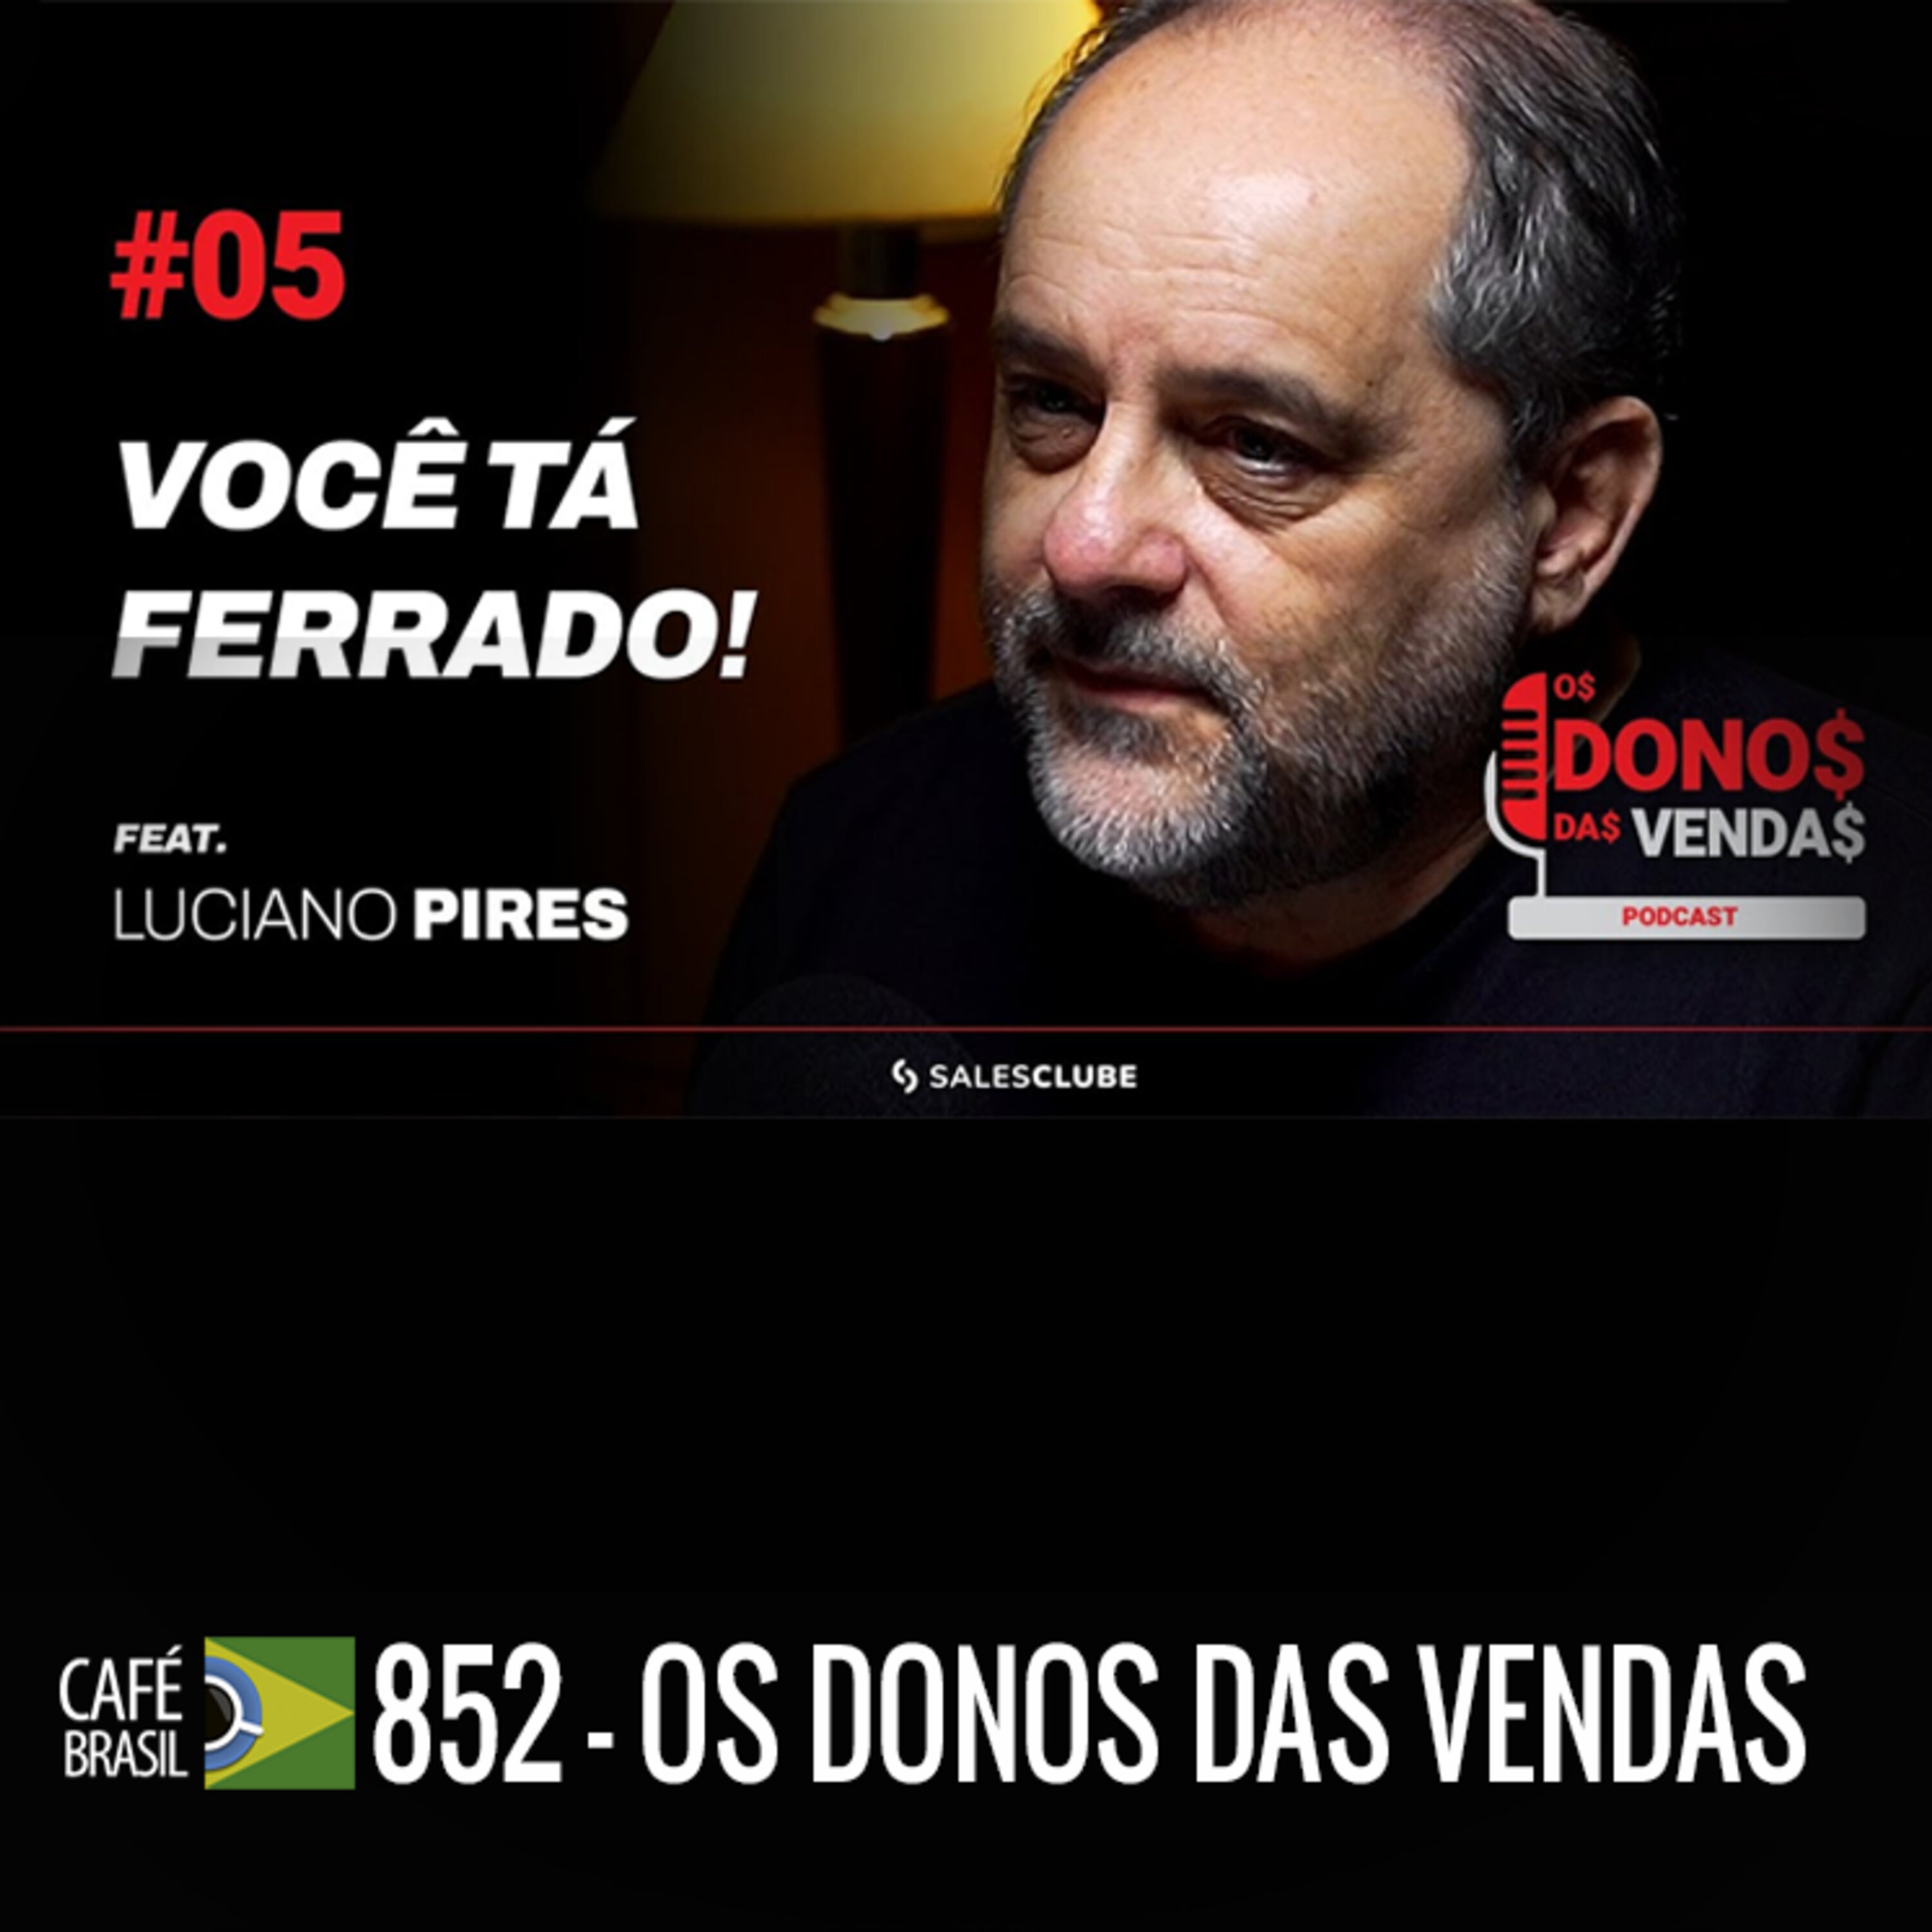 Café Brasil 852 - Os donos da vendas